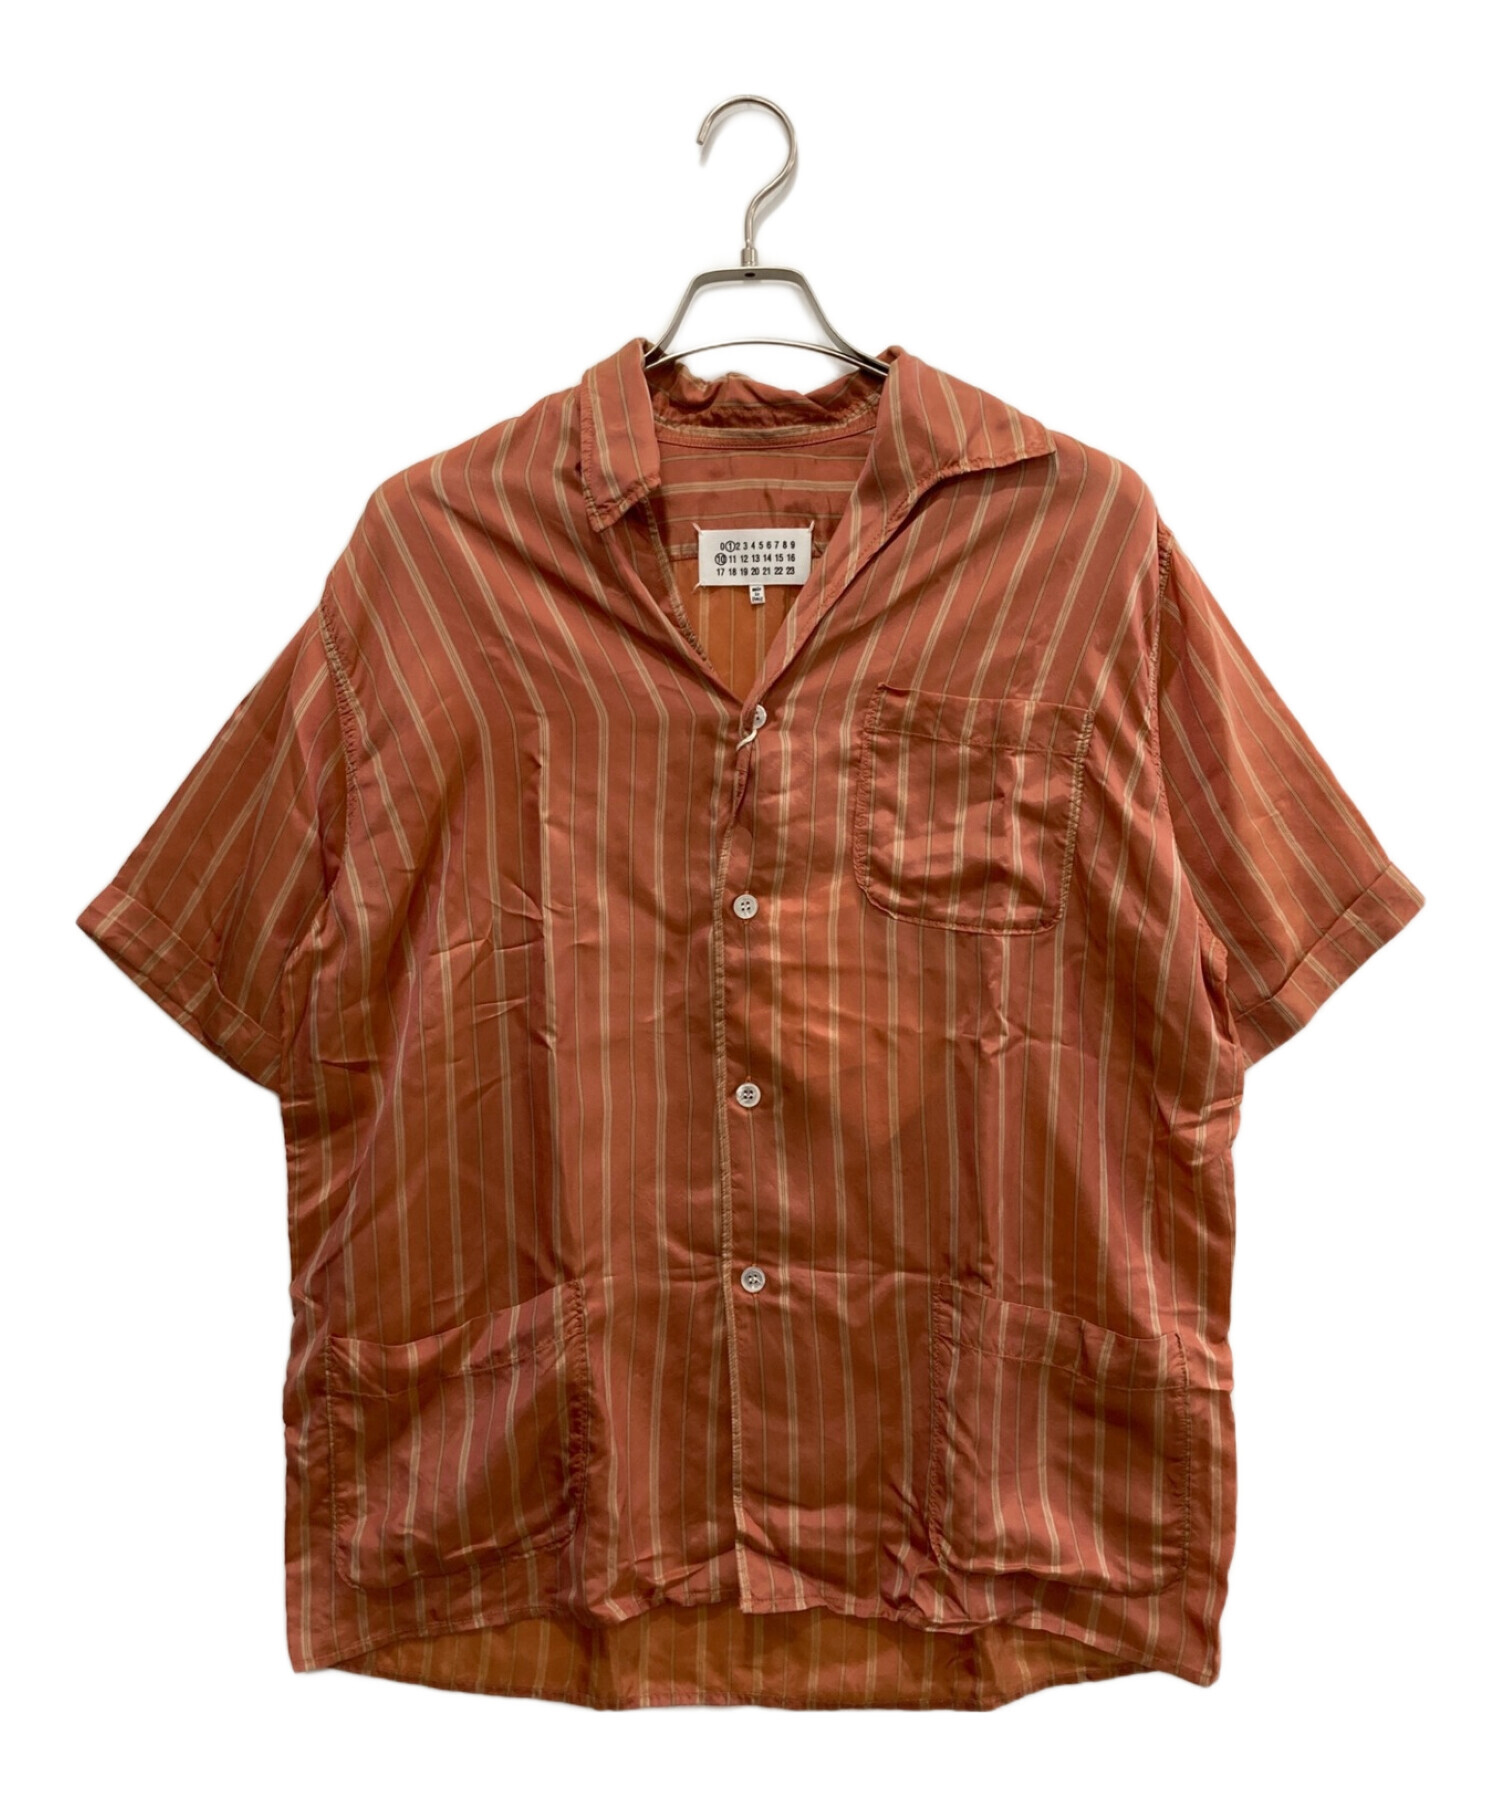 Maison Margiela (メゾンマルジェラ) オープンカラーシャツ オレンジ サイズ:48 未使用品